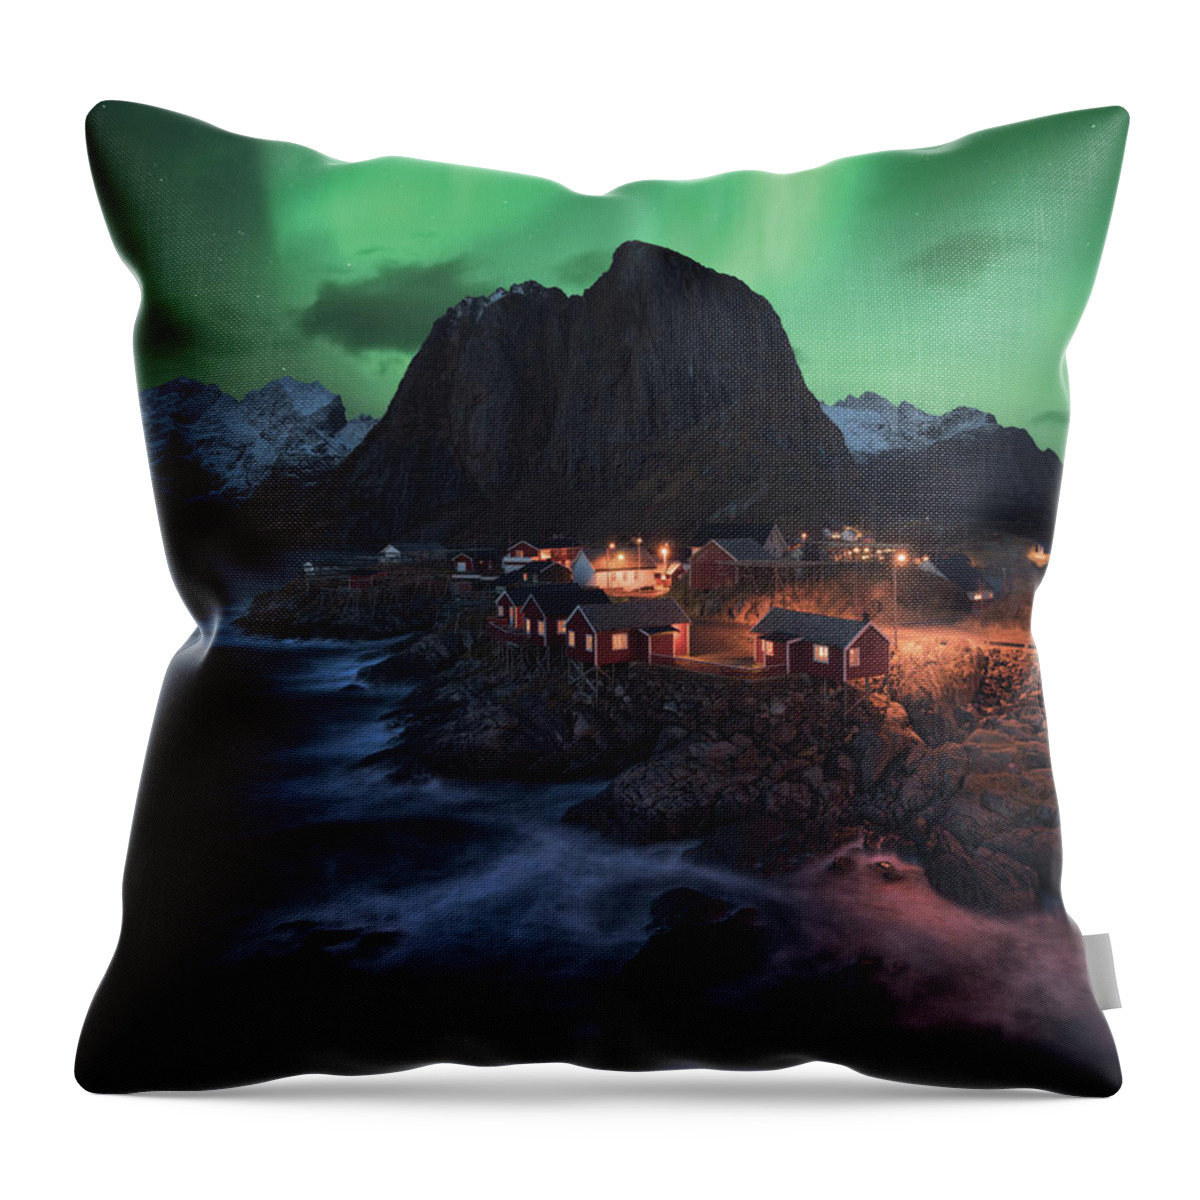 Lofoten Throw Pillow featuring the photograph The Lofoten Dream by Tor-Ivar Naess